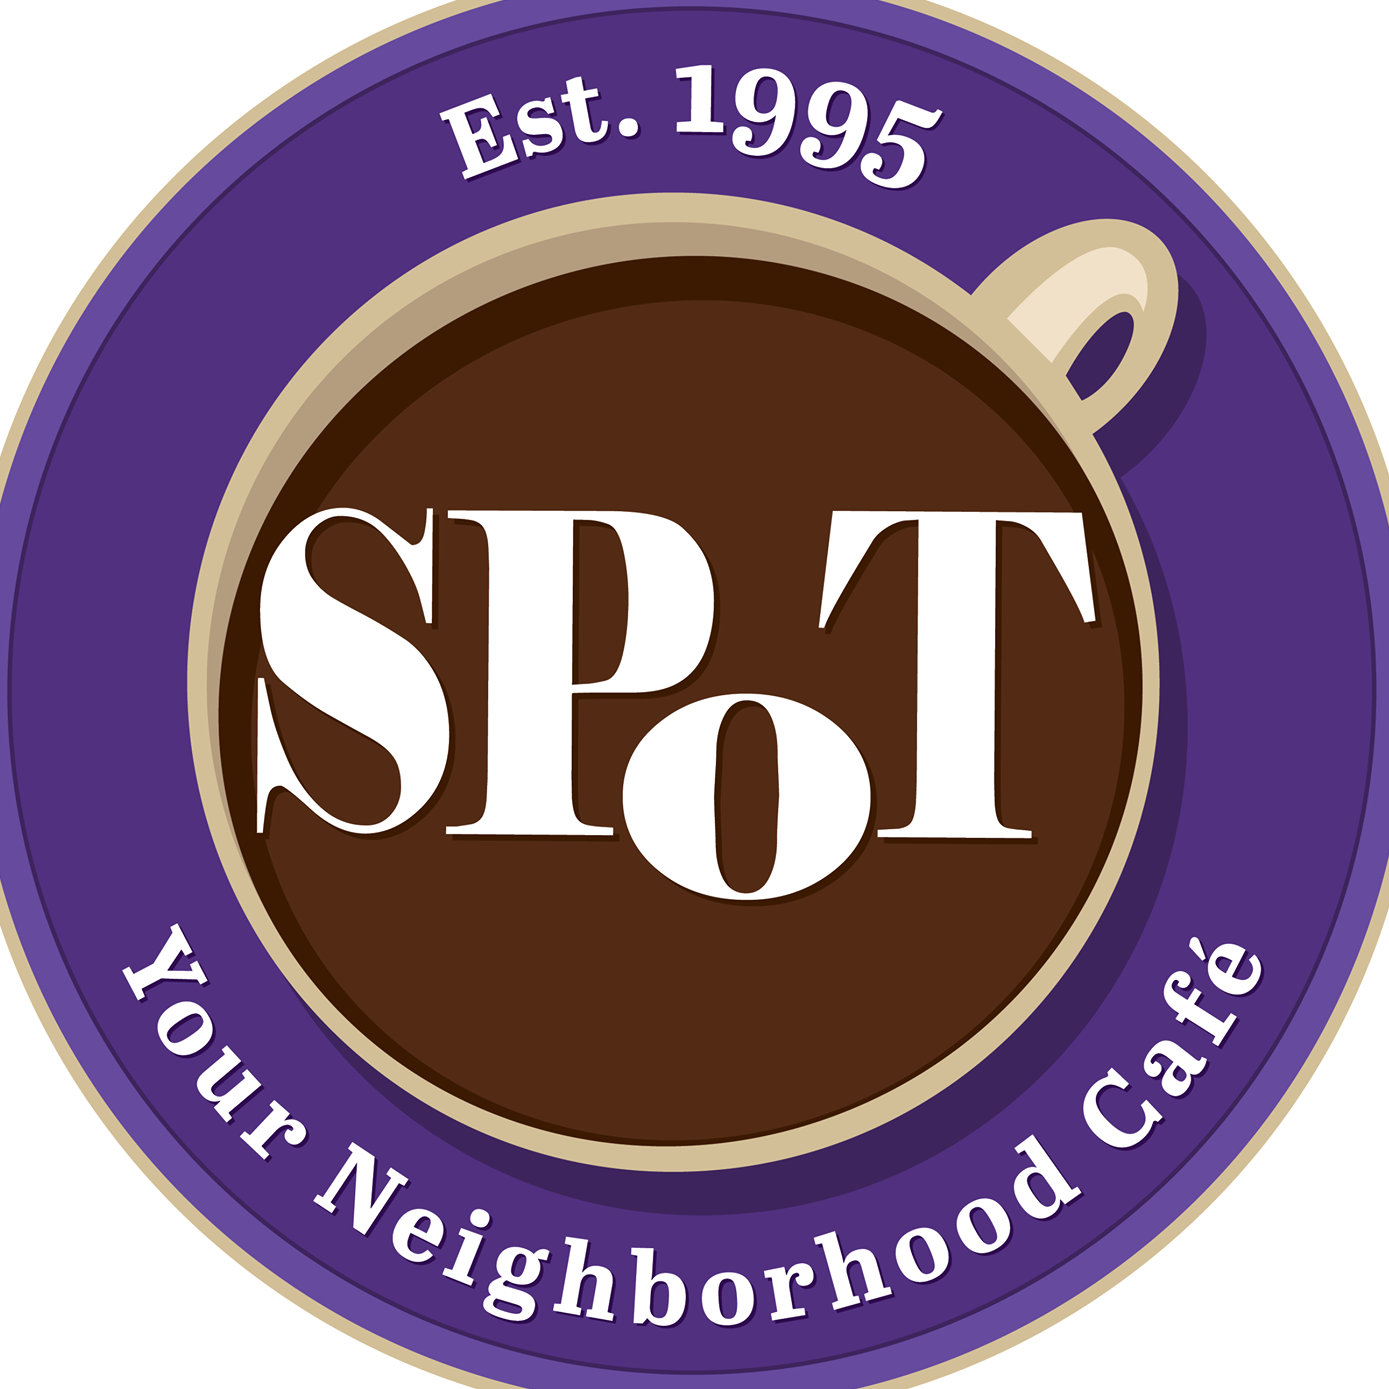 The Spot Cafe logo